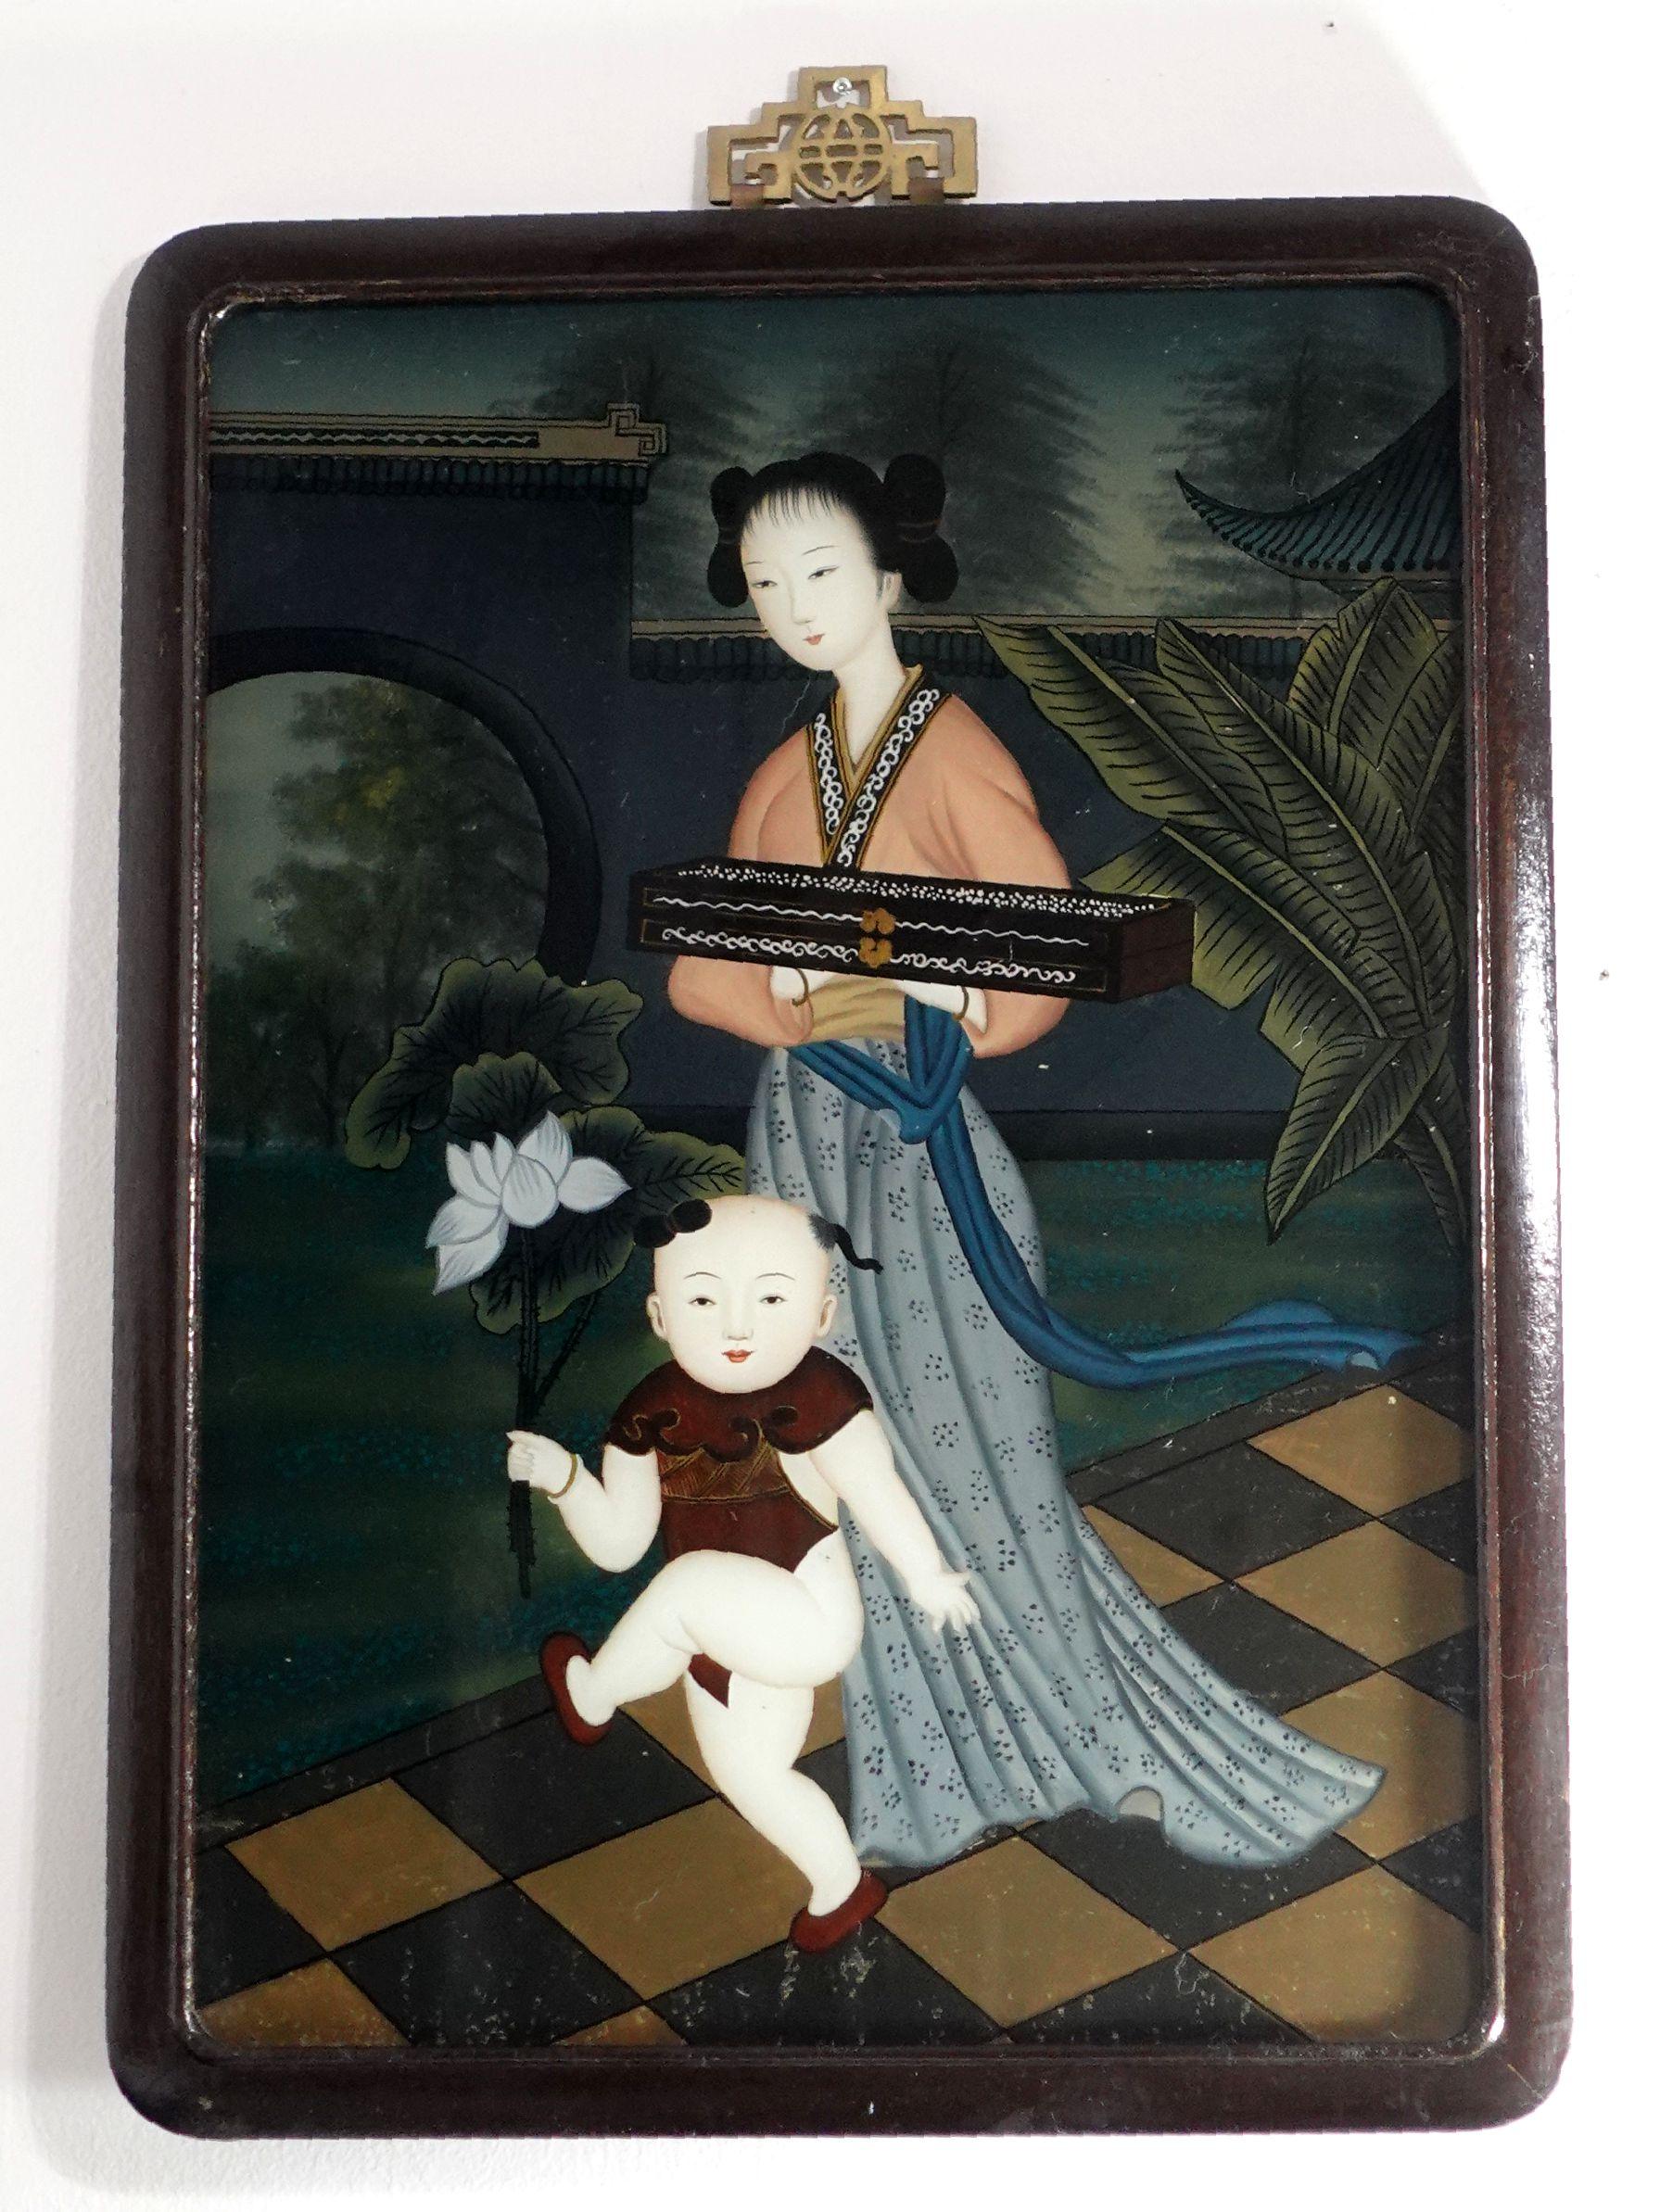 Charmante peinture sur verre inversé d'exportation chinoise de la fin du XIXe siècle au début du XXe siècle, représentant une femme noble dans une cour avec un enfant tenant un lotus, marchant dans la cour devant un mur de séparation et une